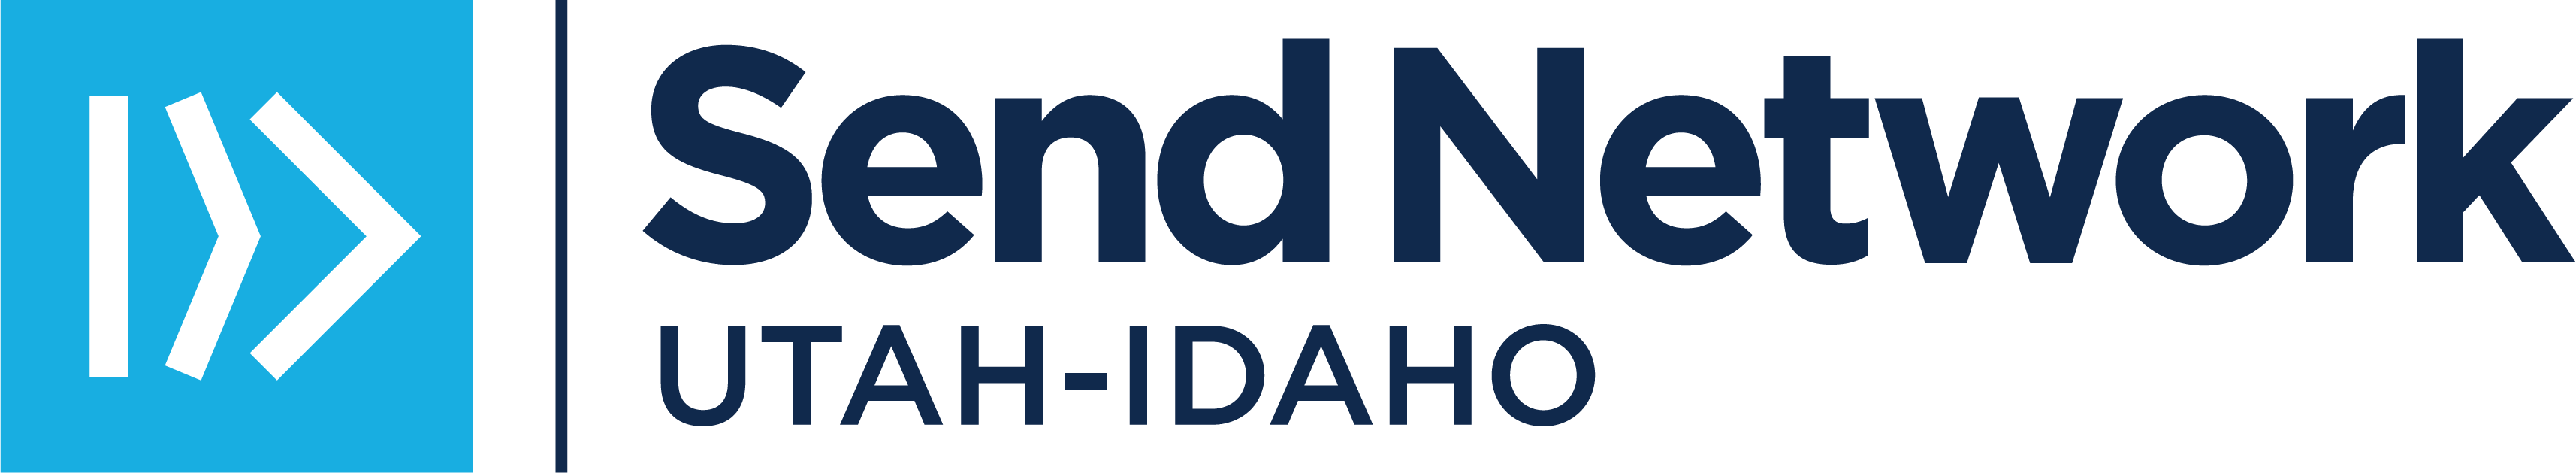 SN Utah-Idaho Logo_BlueNavy